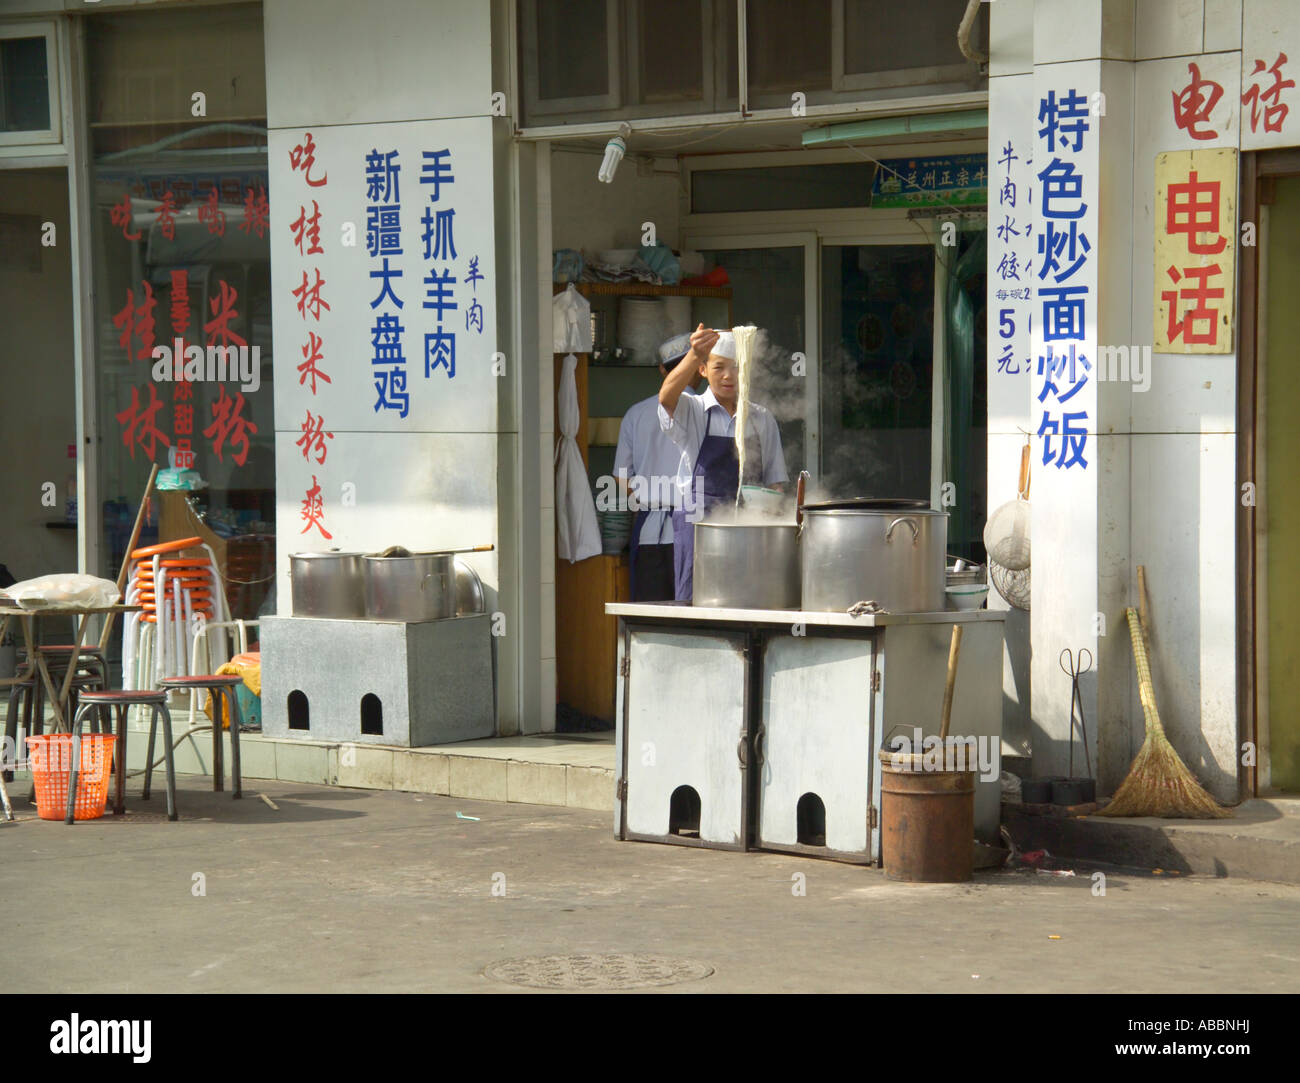 Chinesische Speisen an Straßenecke Stockfoto